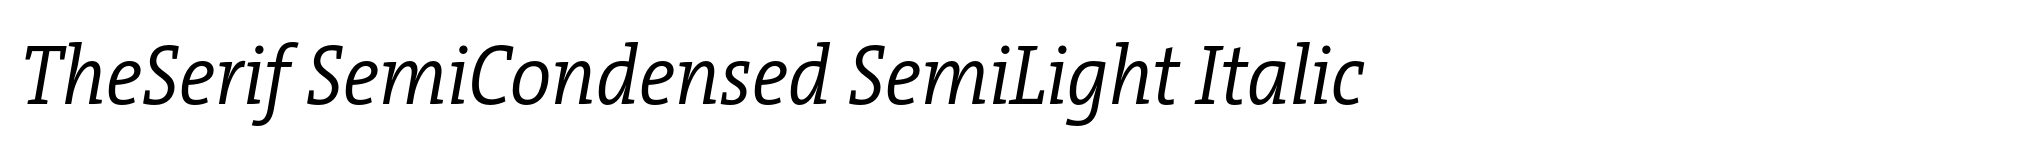 TheSerif SemiCondensed SemiLight Italic image